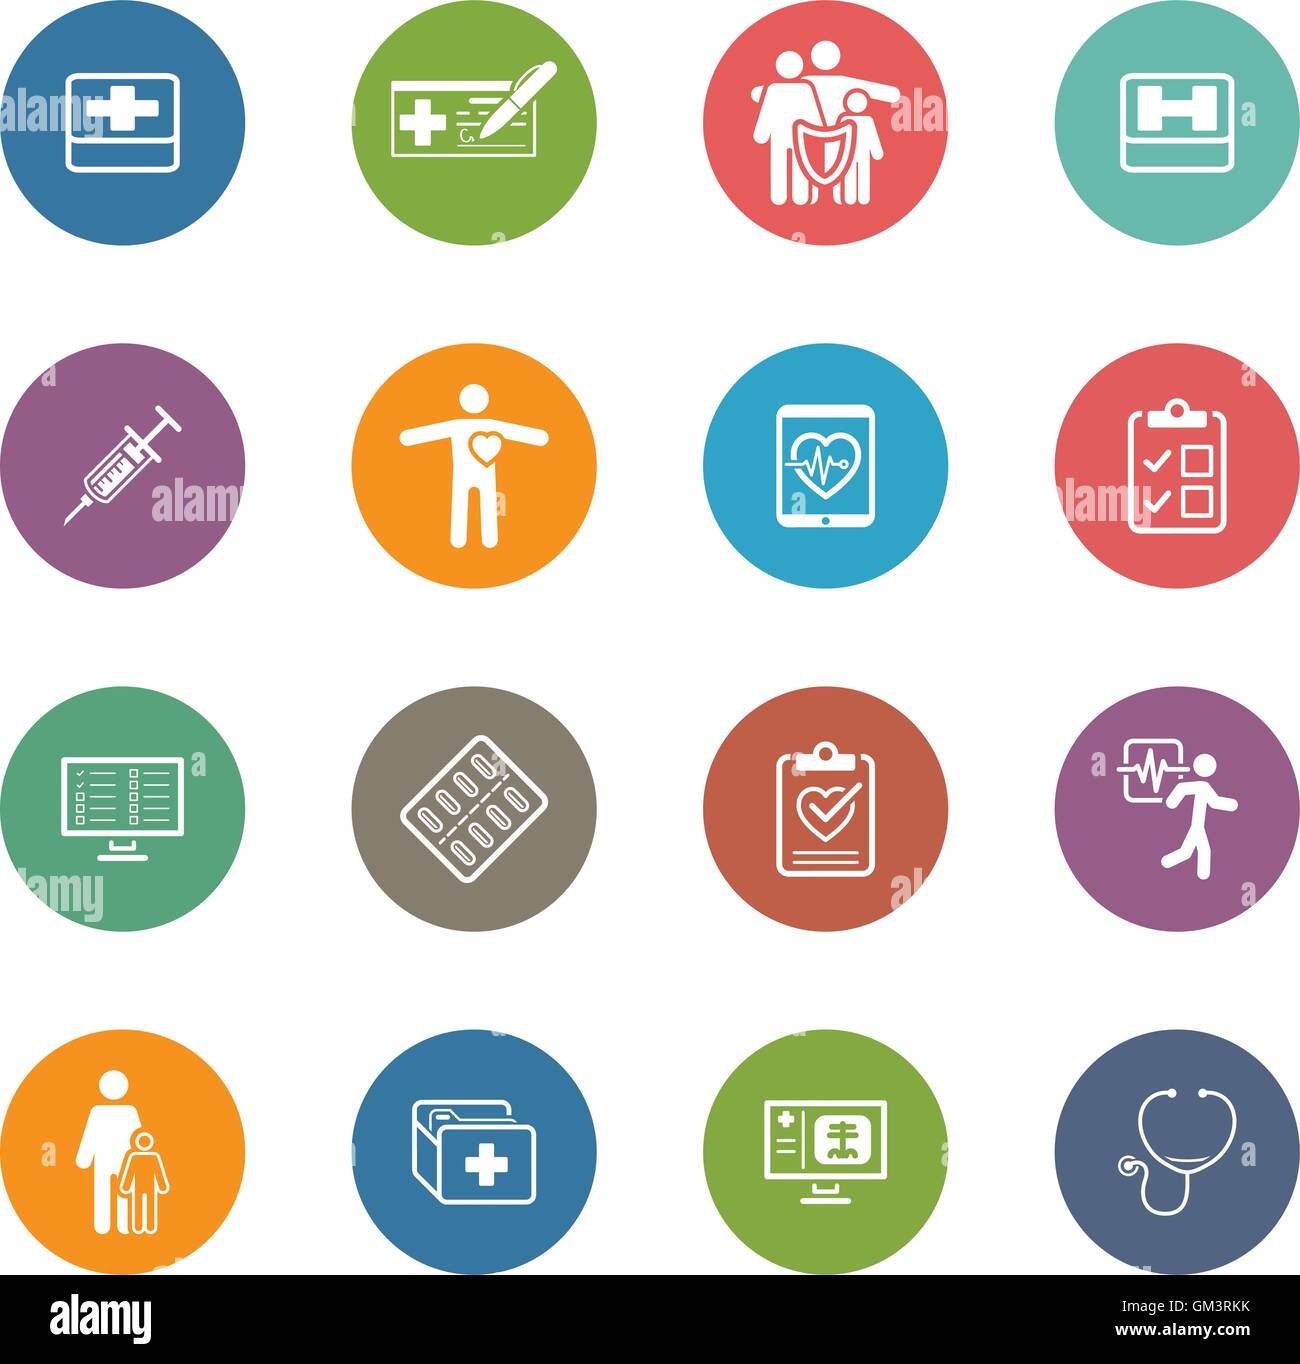 Medizinische & Gesundheitsversorgung Icons Set. Flaches Design. Stock Vektor